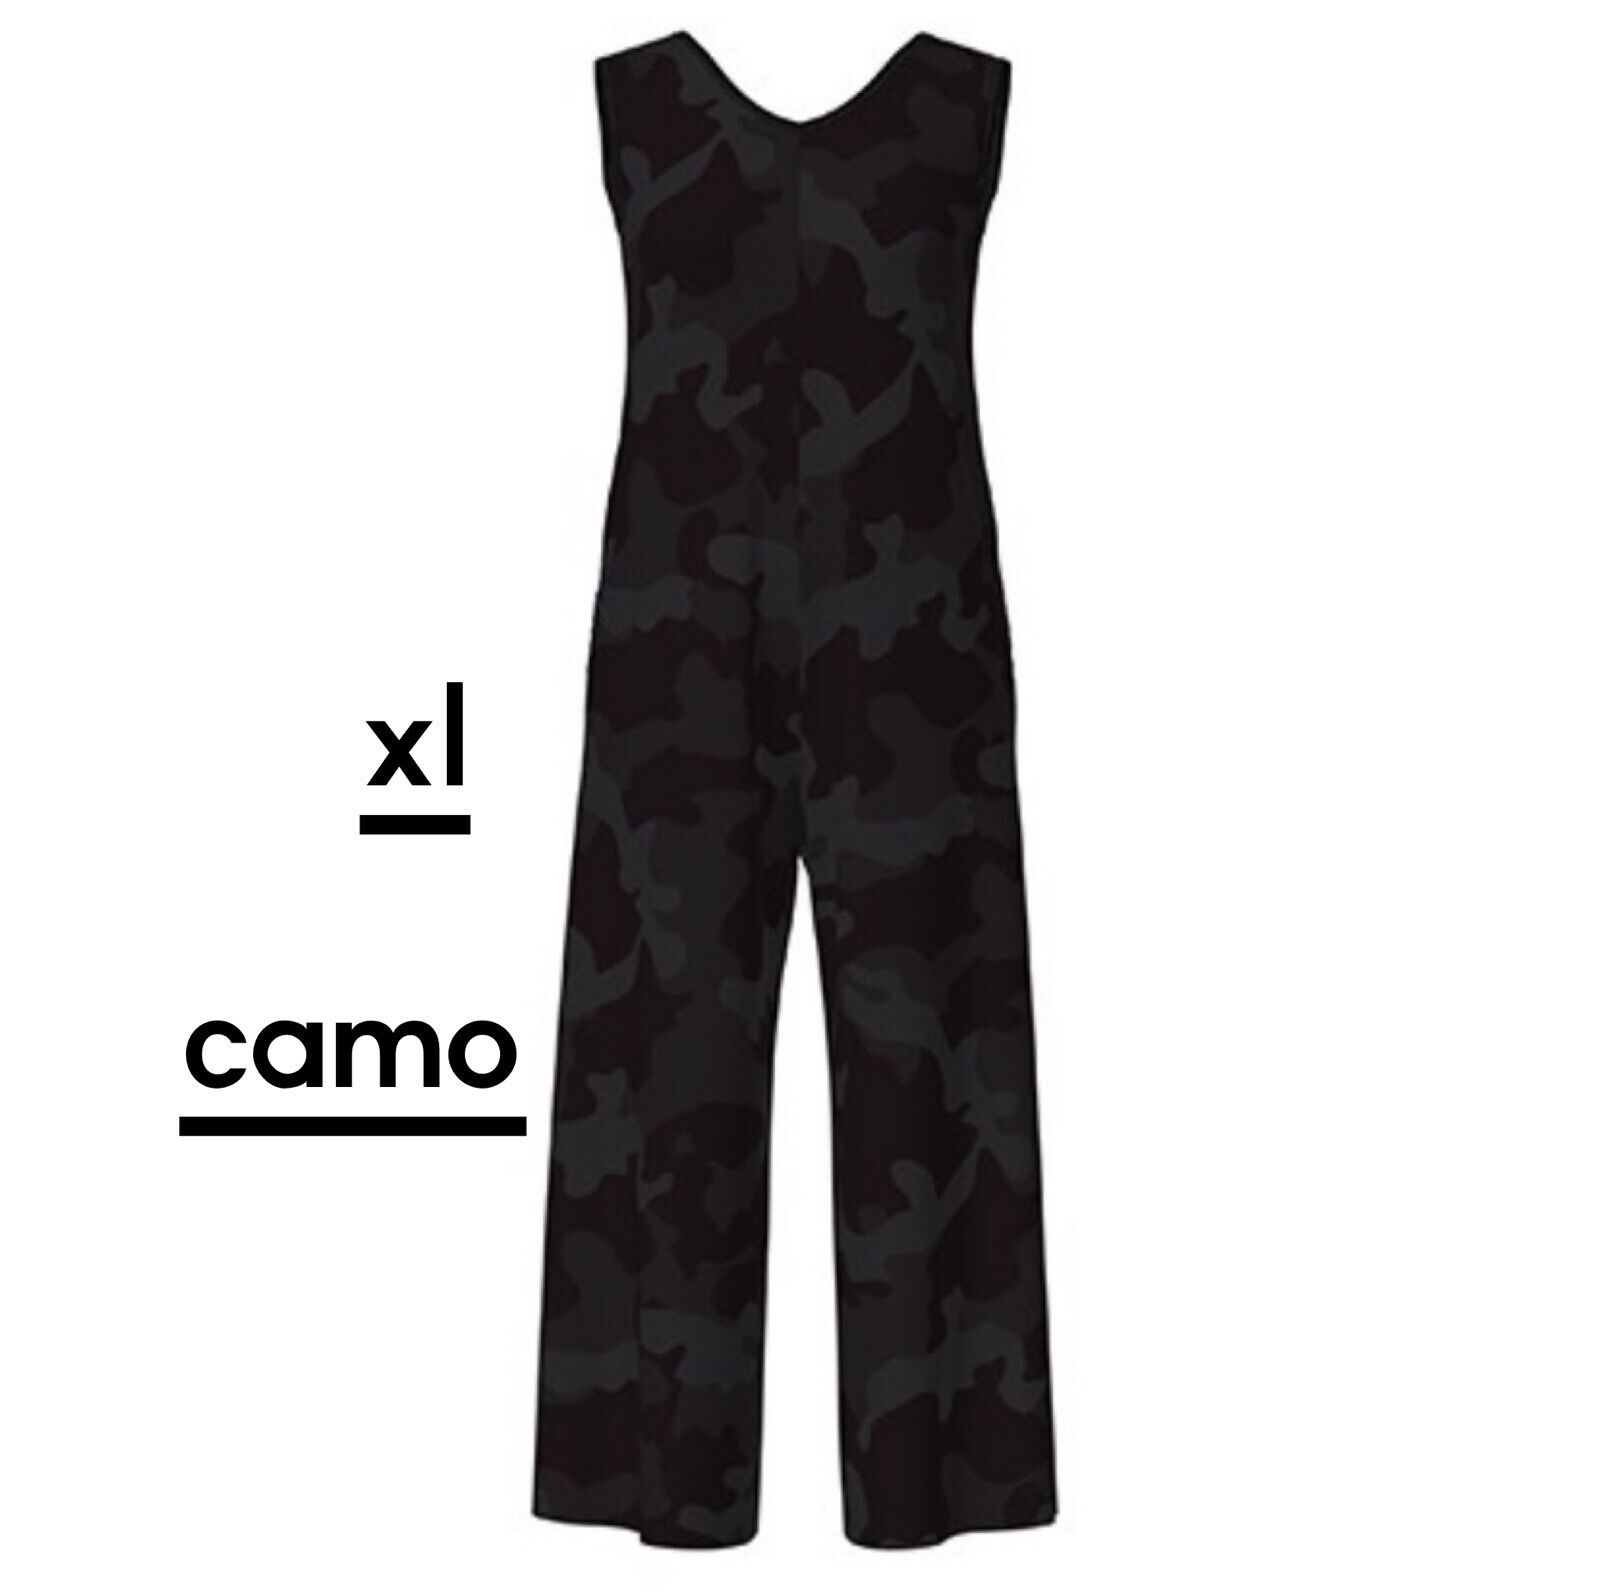 New Release Lularoe Natalie Romper Jumpsuit Size XL Gorgeous Camo